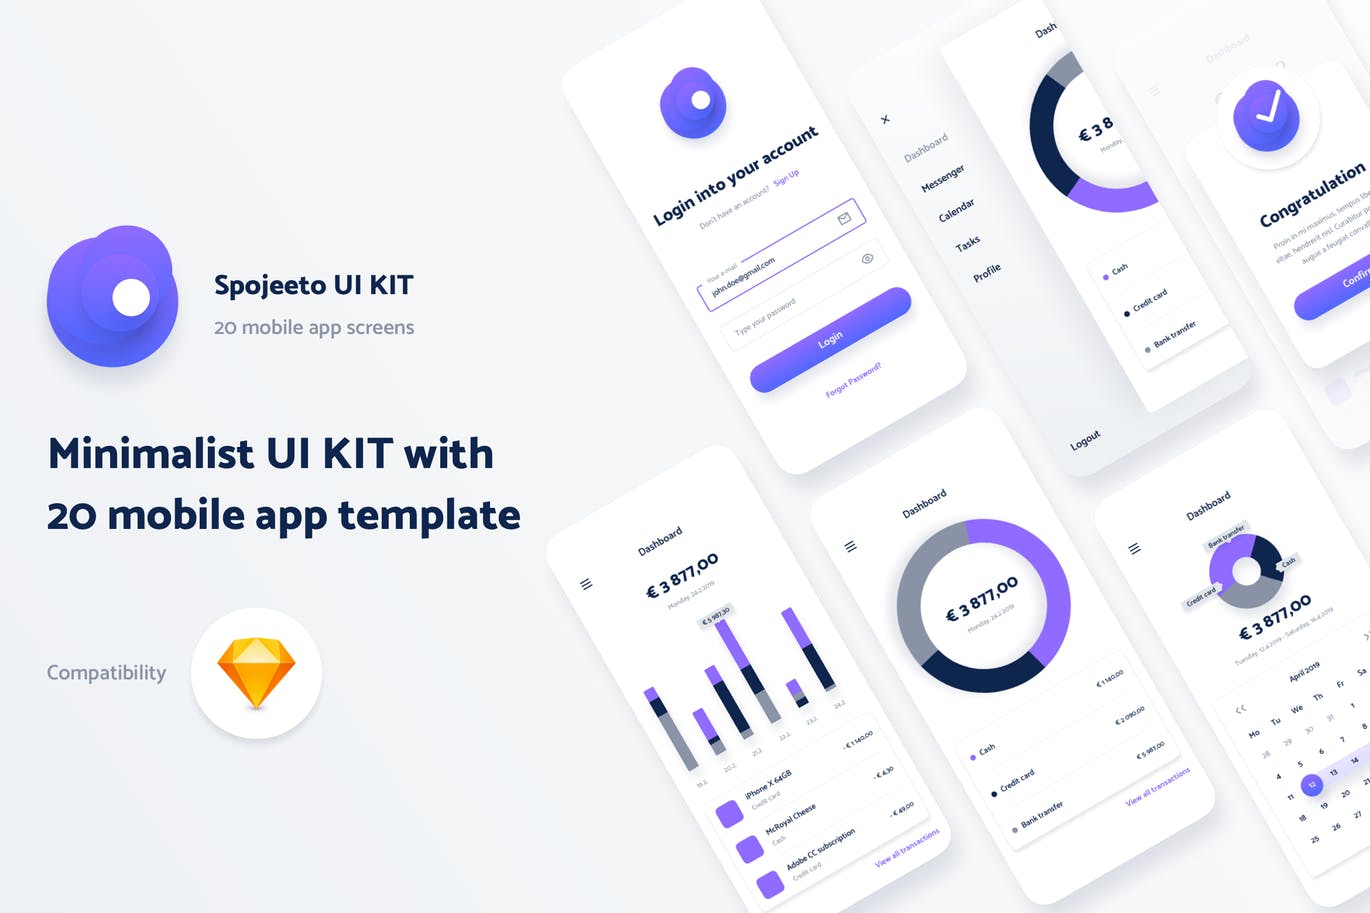 极简主义设计风格APP应用UI设计非凡图库精选套件v1 Spojeeto Mobile App UI Kit插图